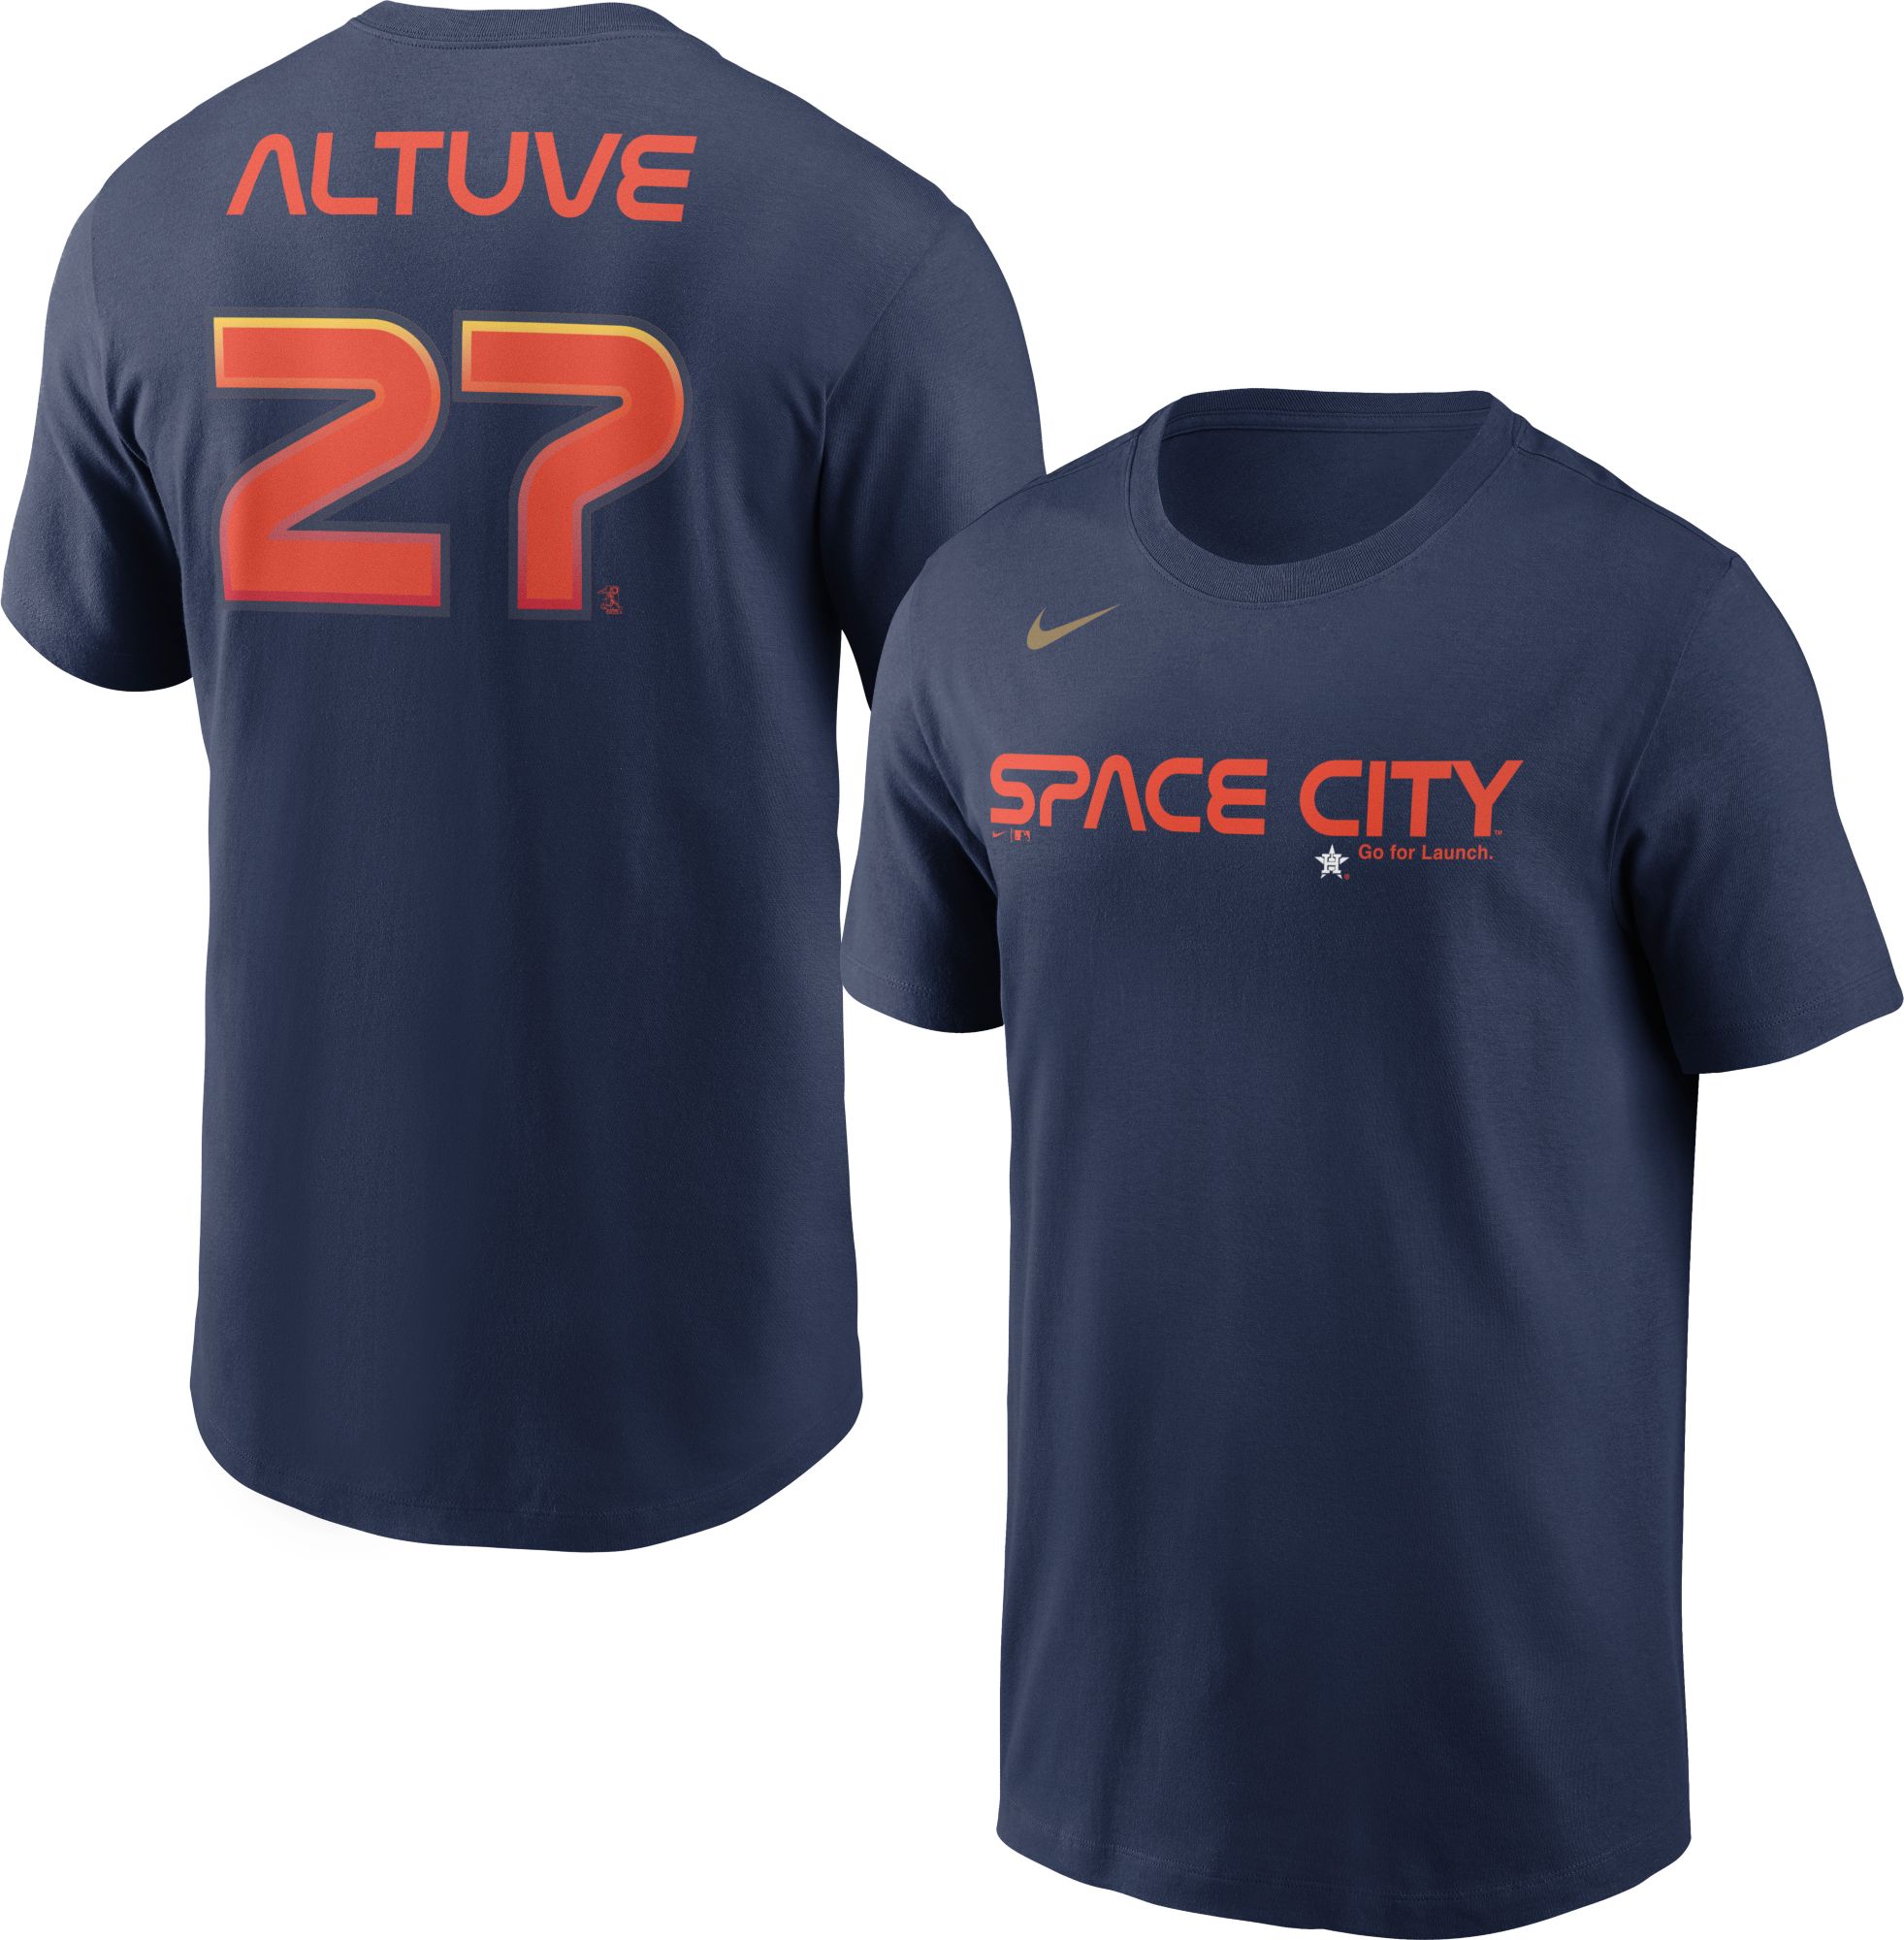 Houston Astros Jeremy Pena 2022 World Series T-shirt - Kaiteez